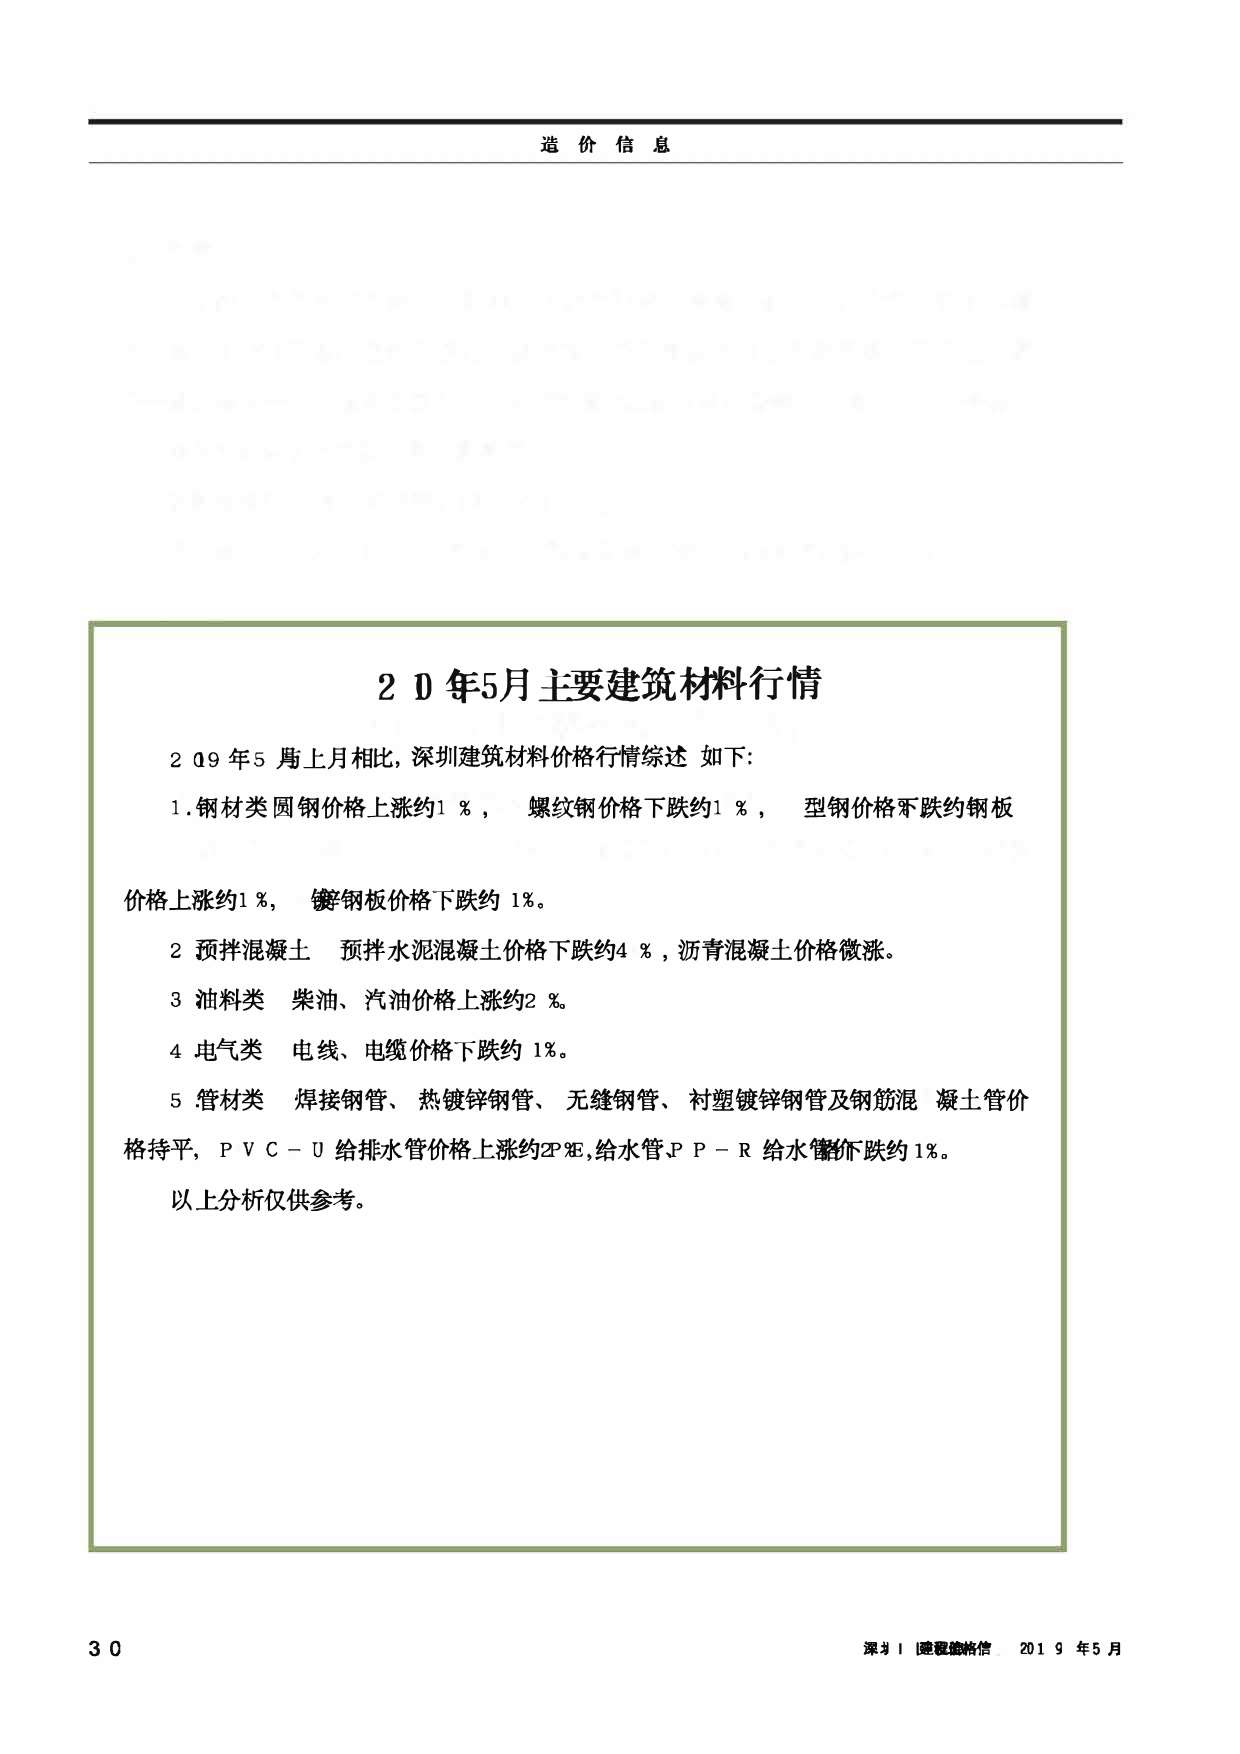 深圳市2019年5月工程信息价_深圳市信息价期刊PDF扫描件电子版